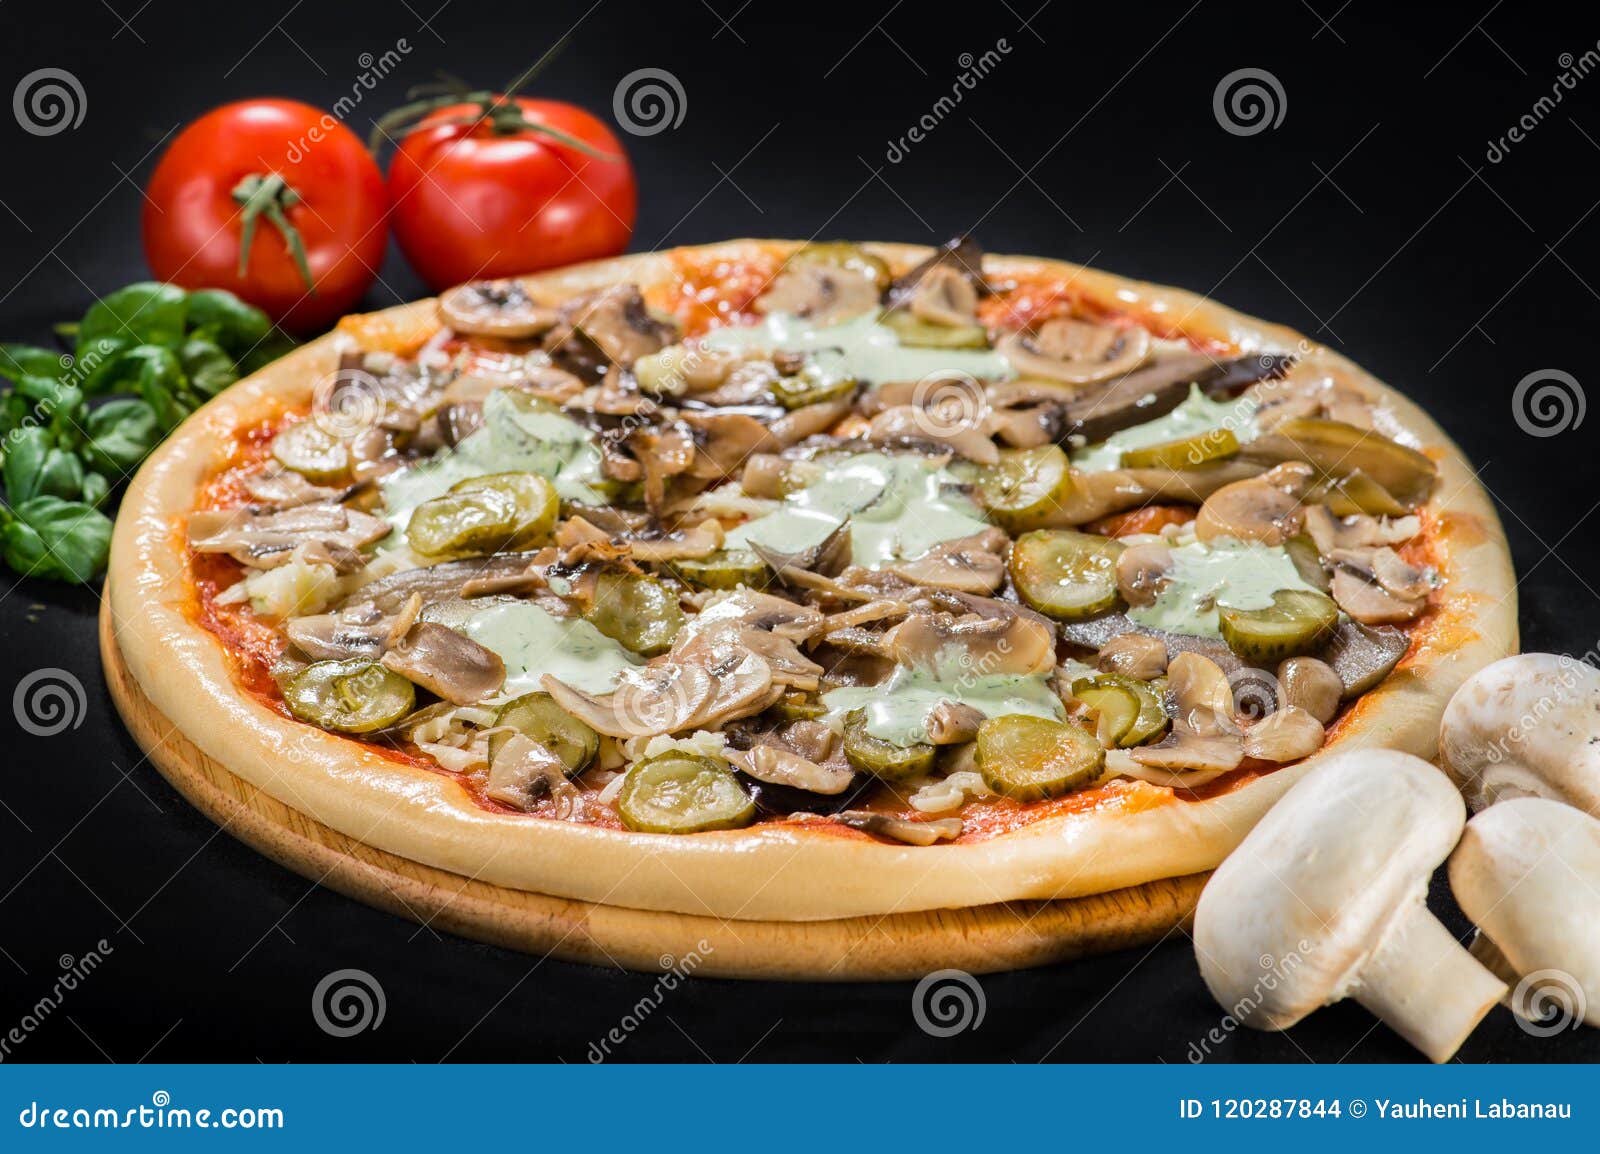 грибная пицца с колбасой или нет фото 90